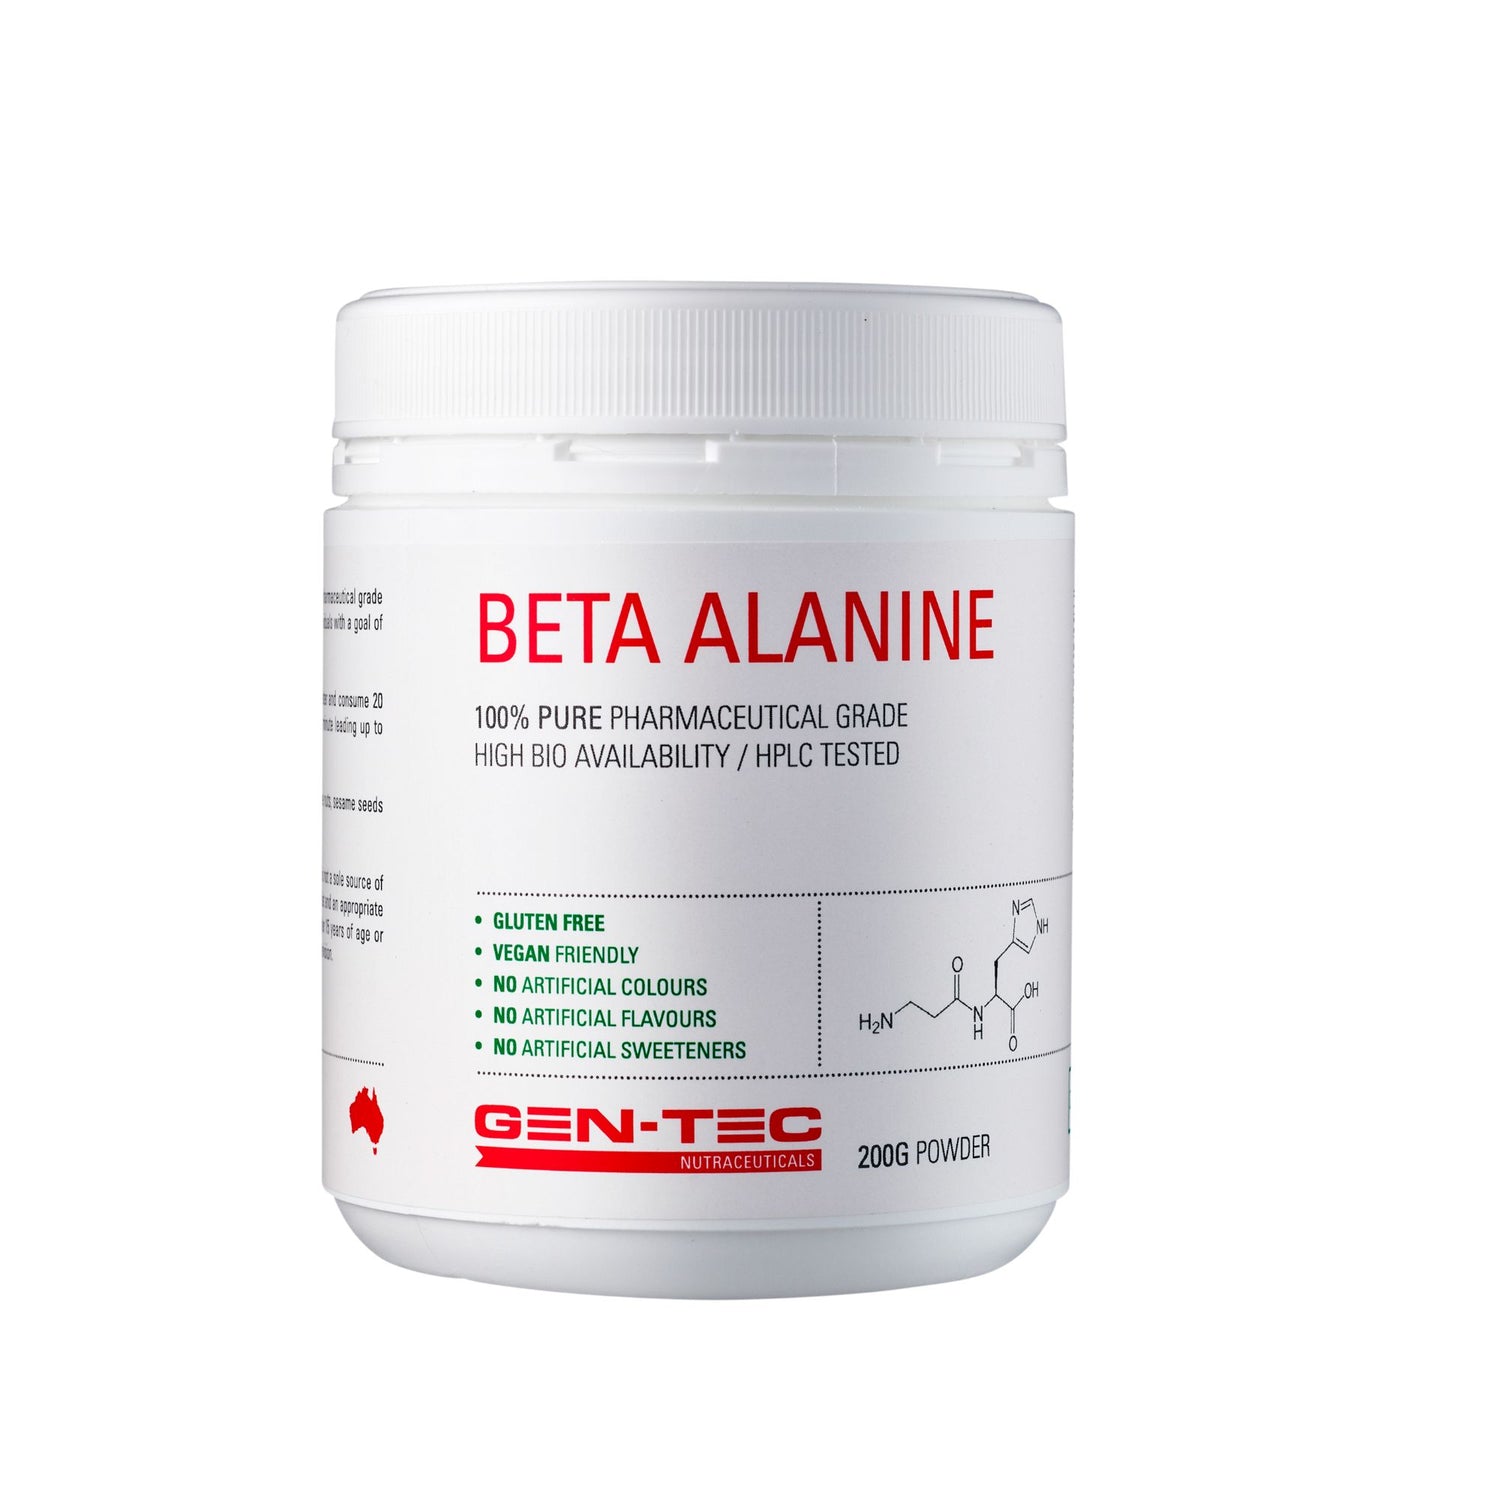 Gentec Beta Alanine Nutraceuticals